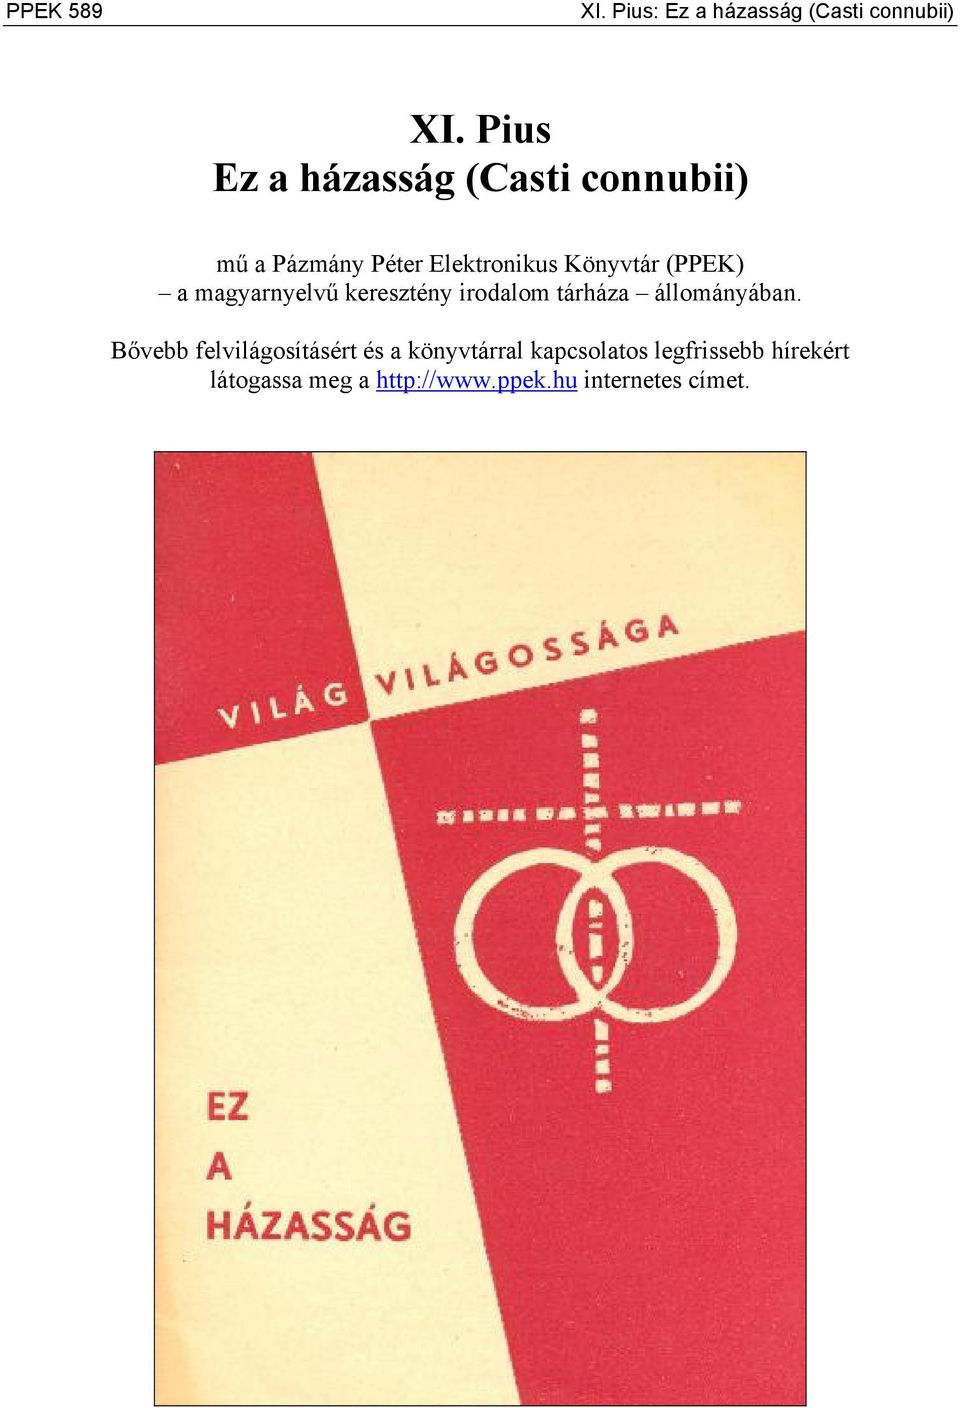 (PPEK) a magyarnyelvű keresztény irodalom tárháza állományában.